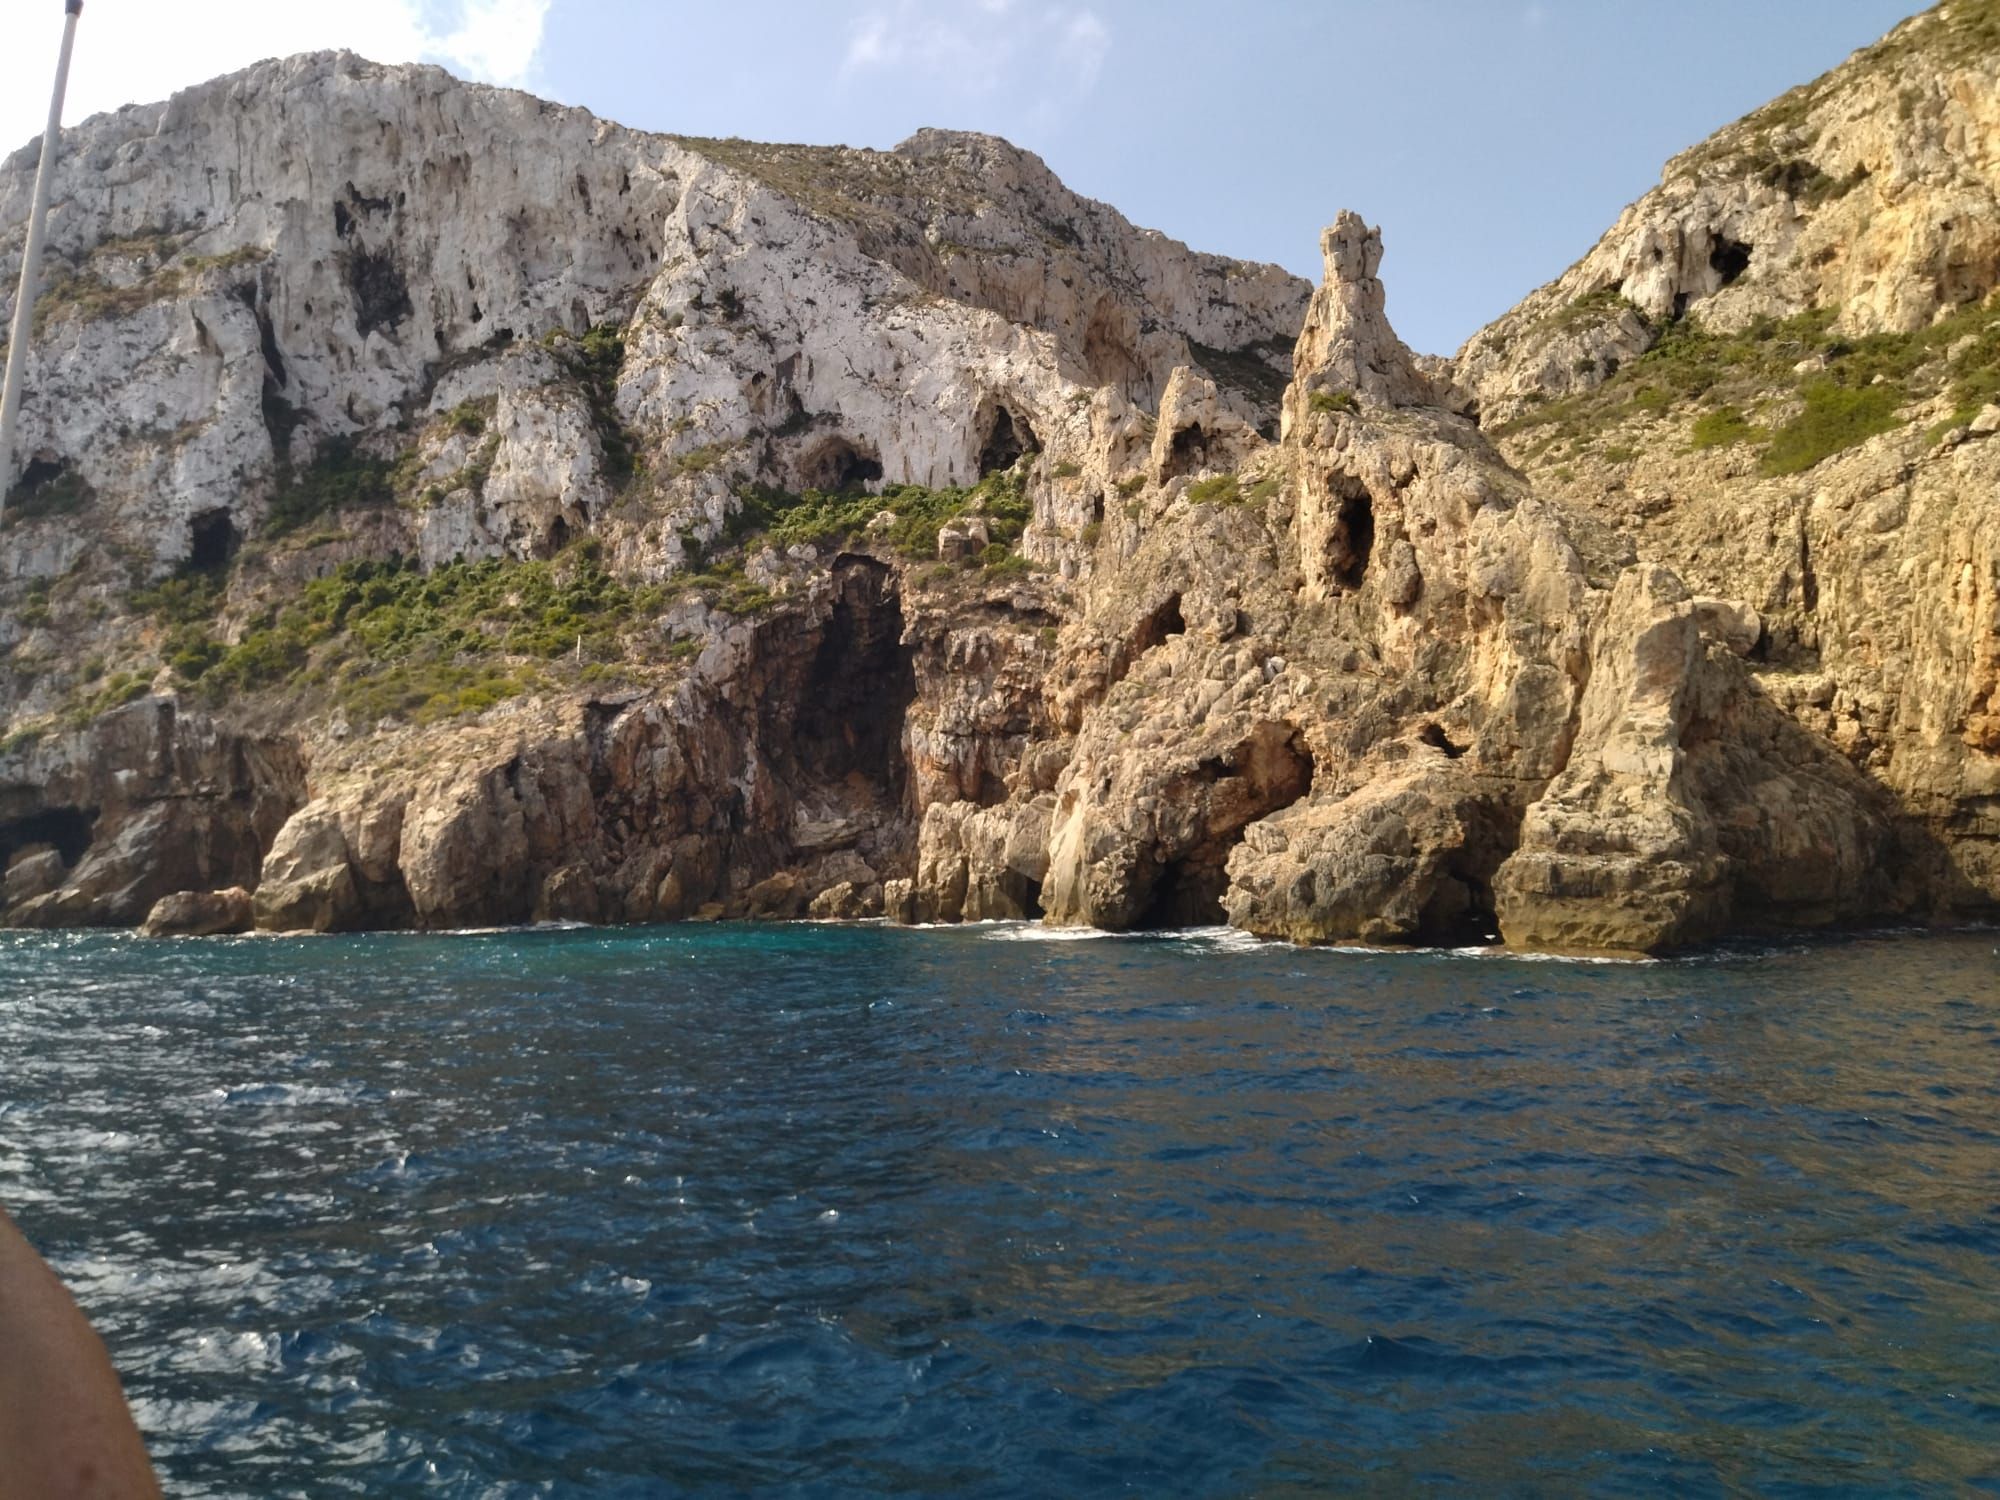 Bella e imponente: así es la costa de acantilados del cabo de Sant Antoni (imágenes)